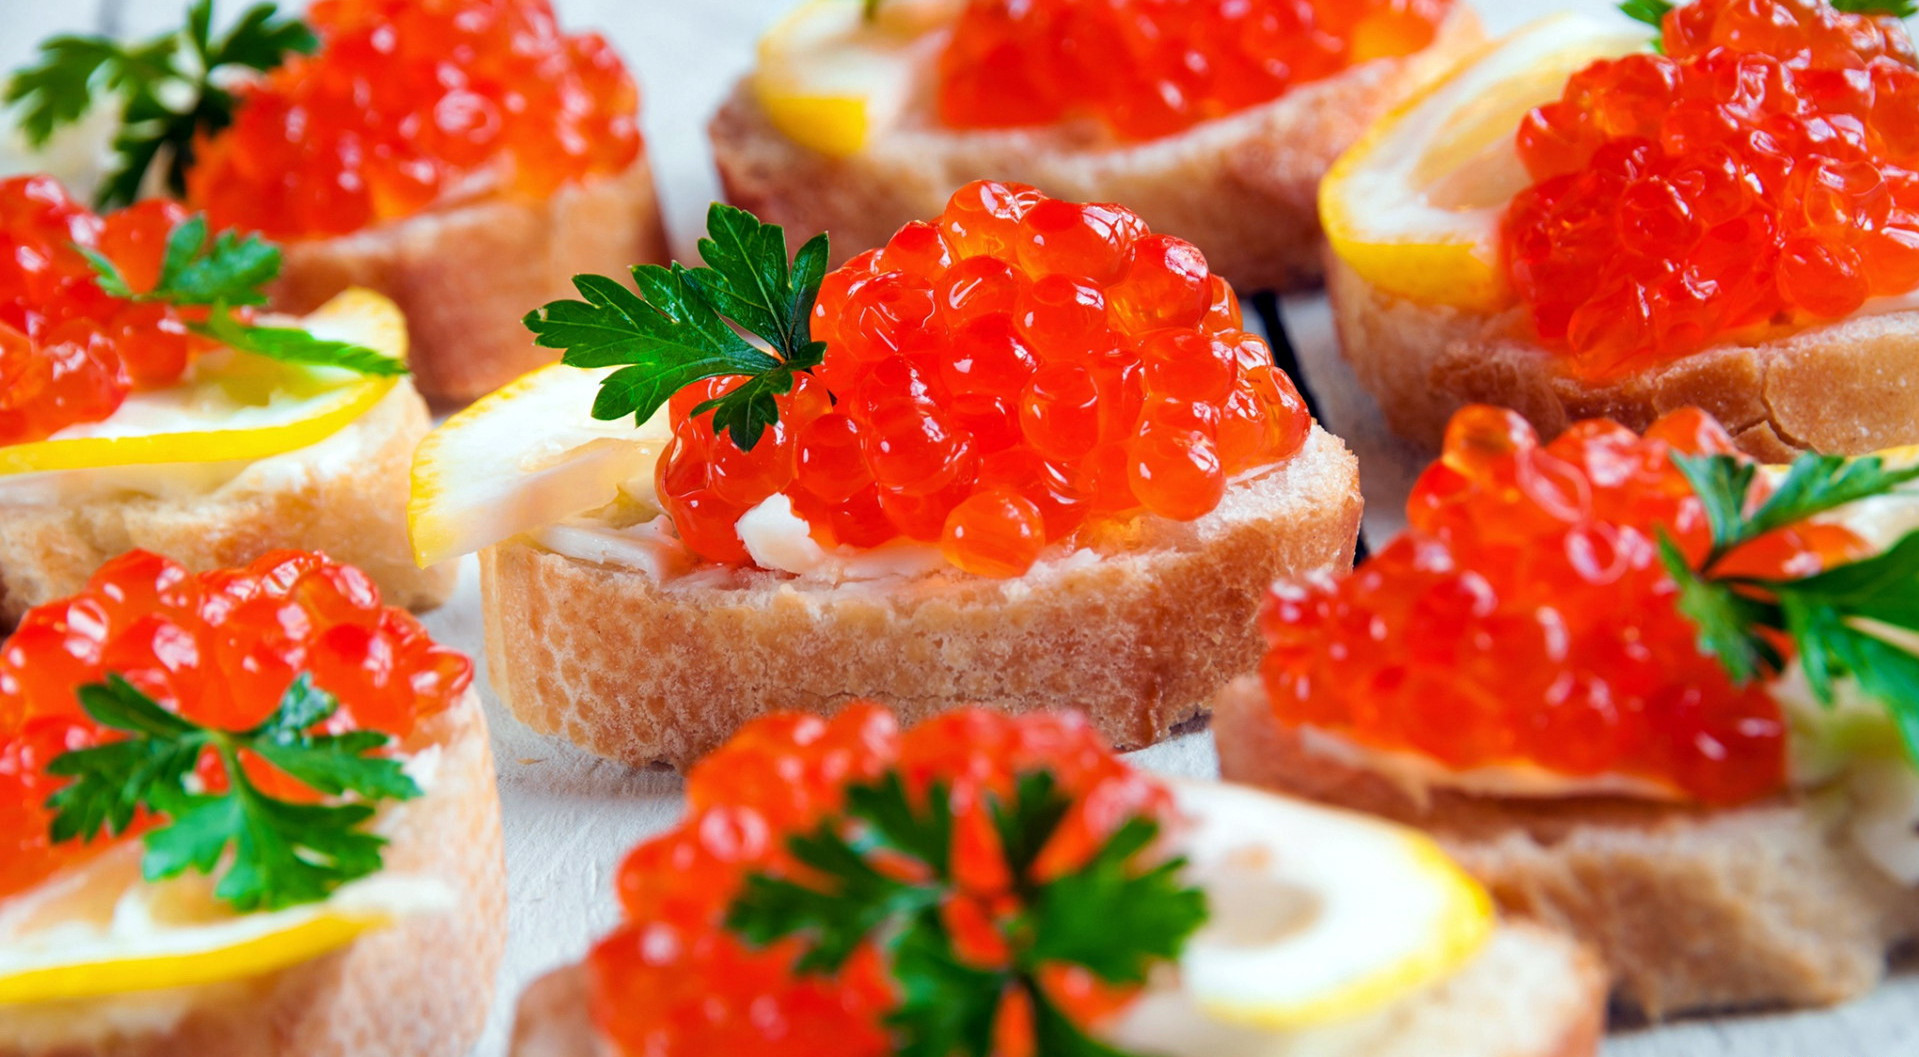 Red Caviar Bread Food 1919x1057